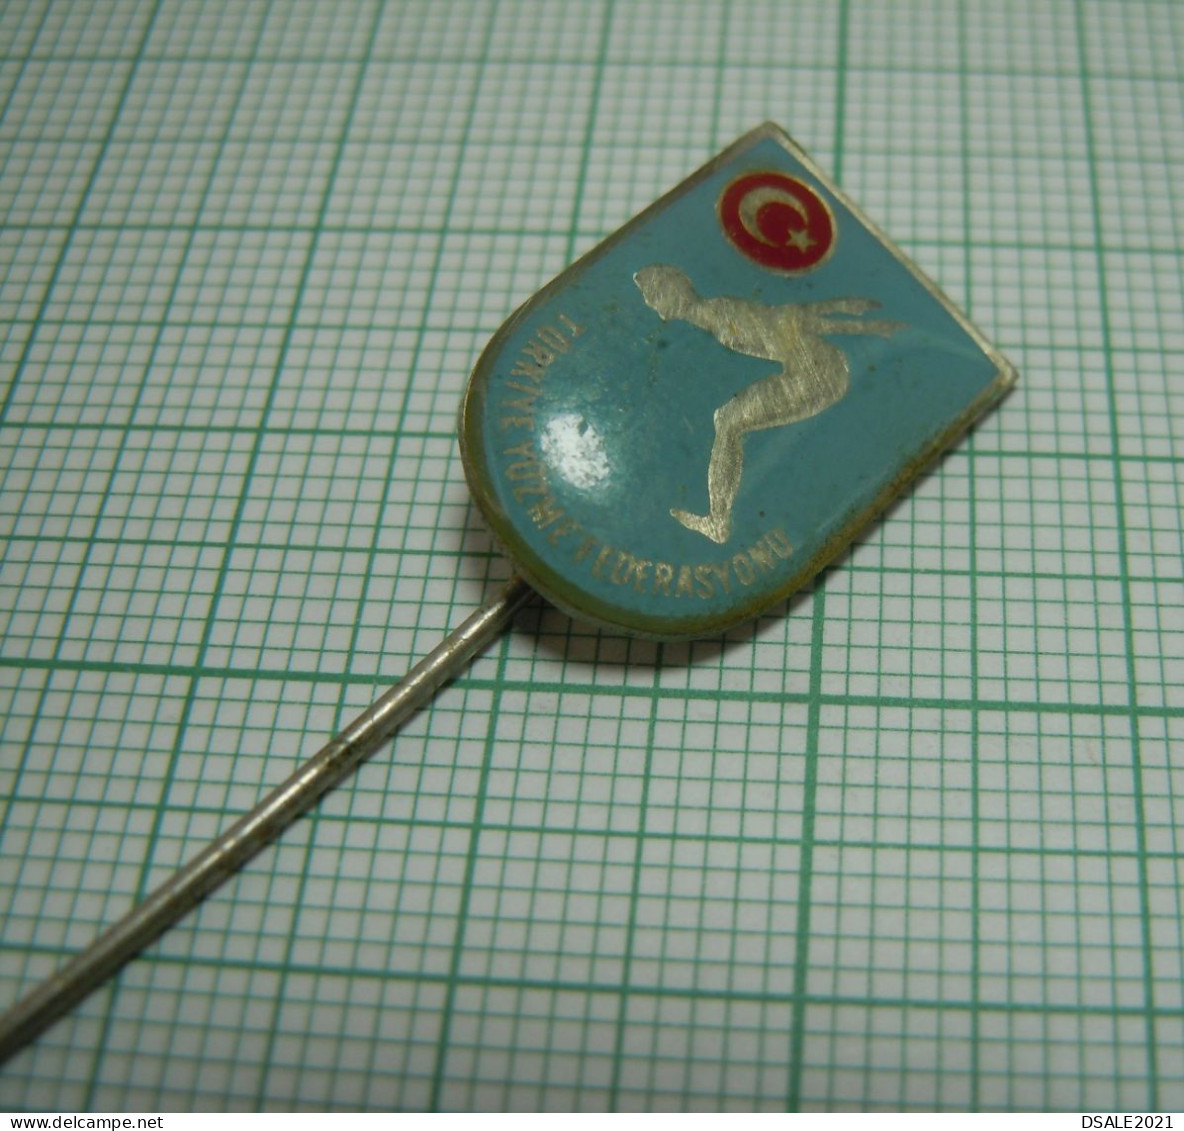 Turkey, Turkish Swimming Federation, TYF Türkiye Yüzme Federasyonu, Vintage Pin Badge, Abzeichen (ds1206) - Swimming